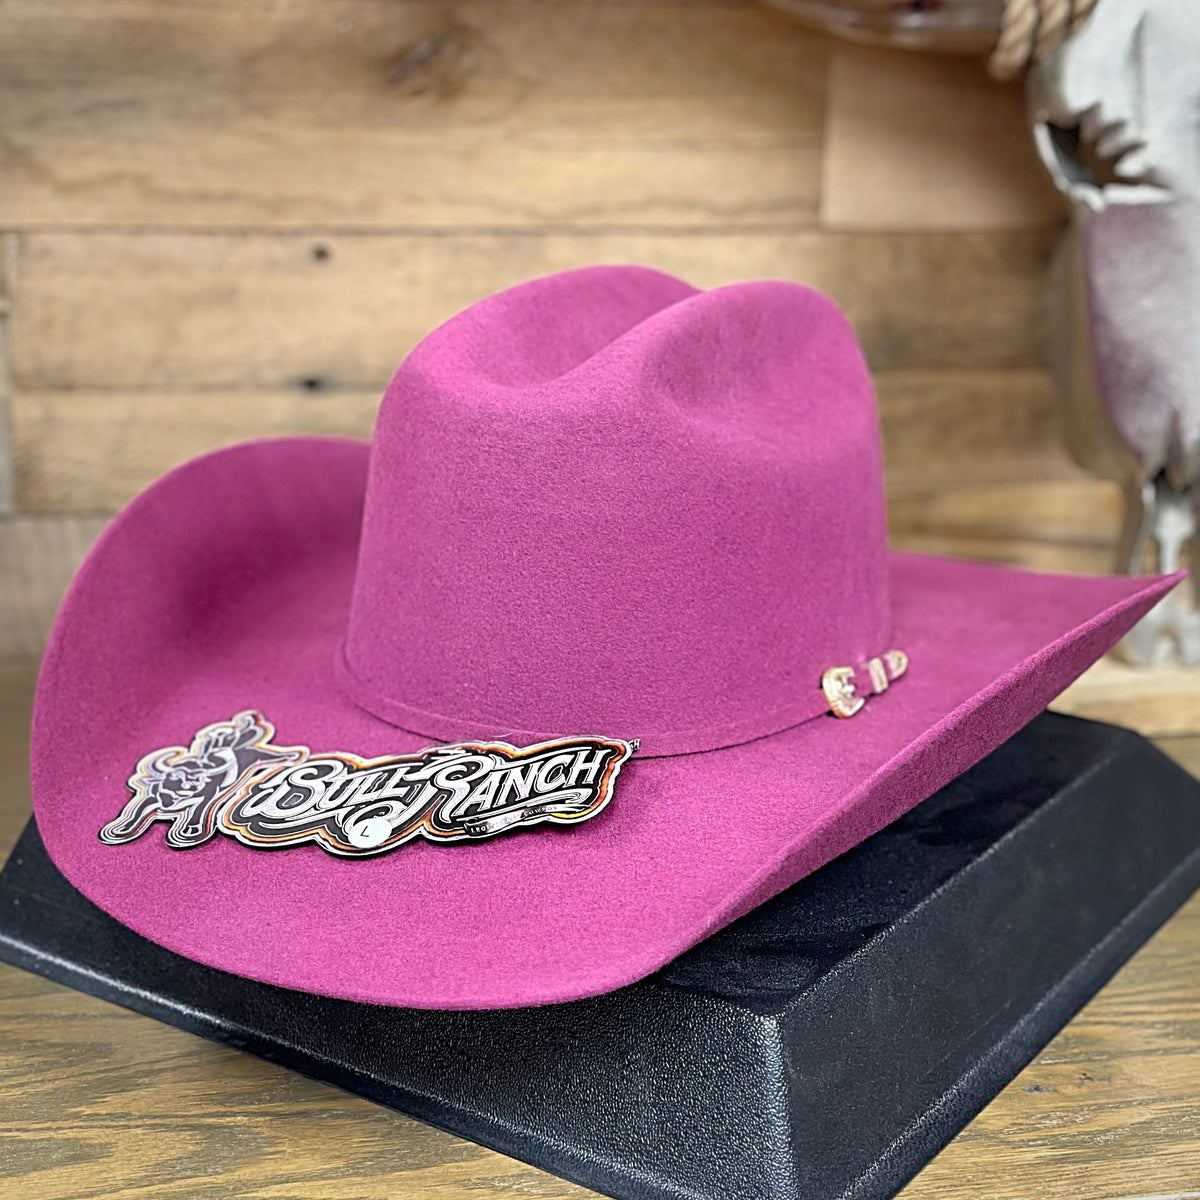 Bull Ranch Women's Vid Purple Wool Felt Hat